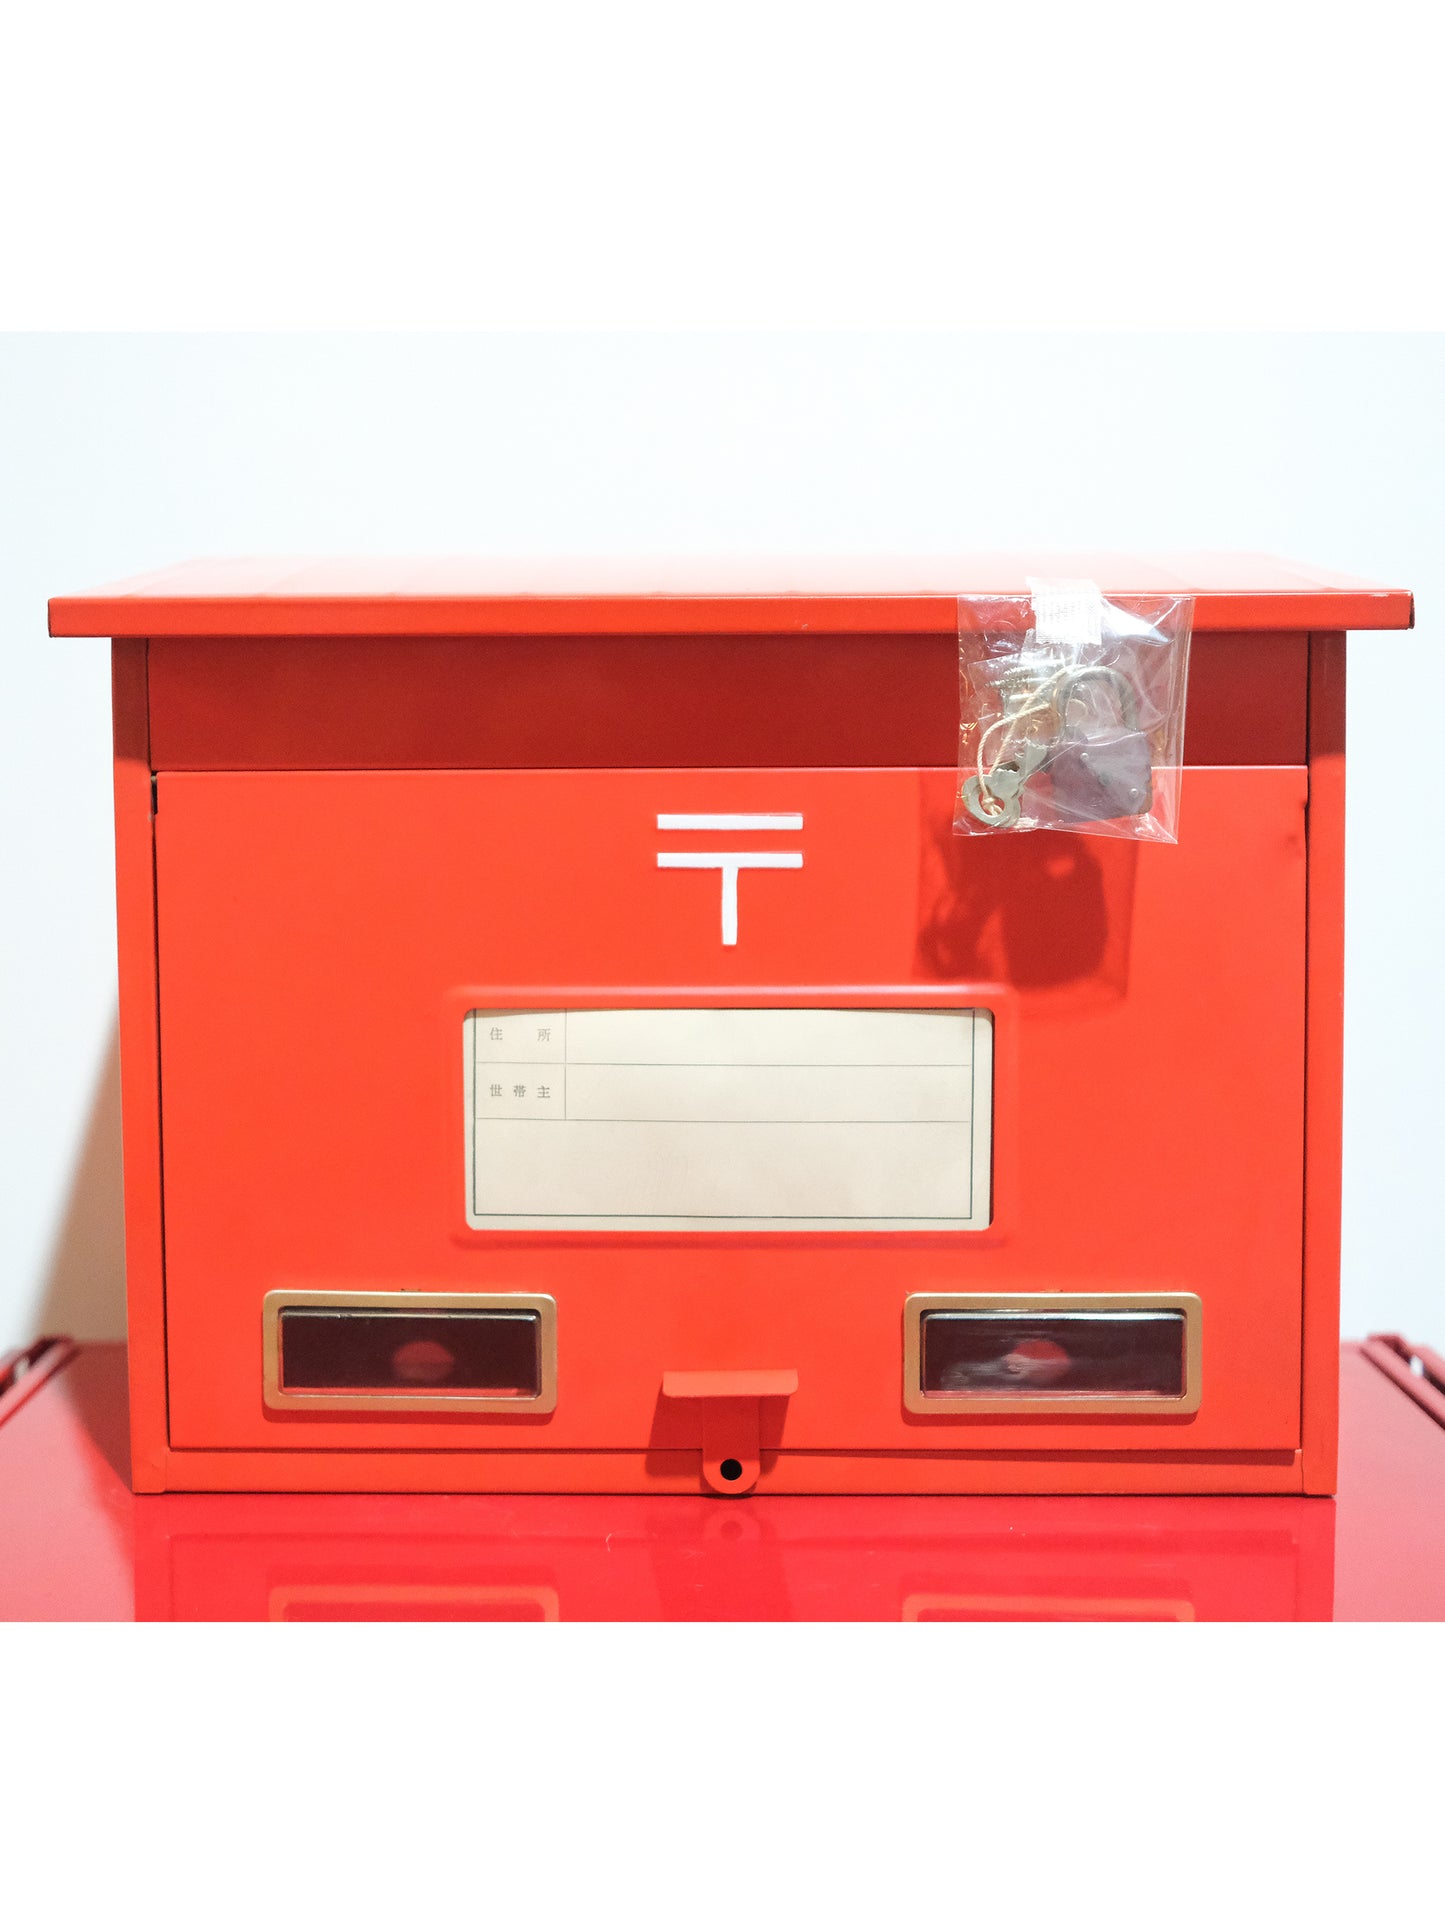 未使用 日本 郵政省標準規格品 KOYO 家用 紅色 郵便箱 郵箱 Mail Box